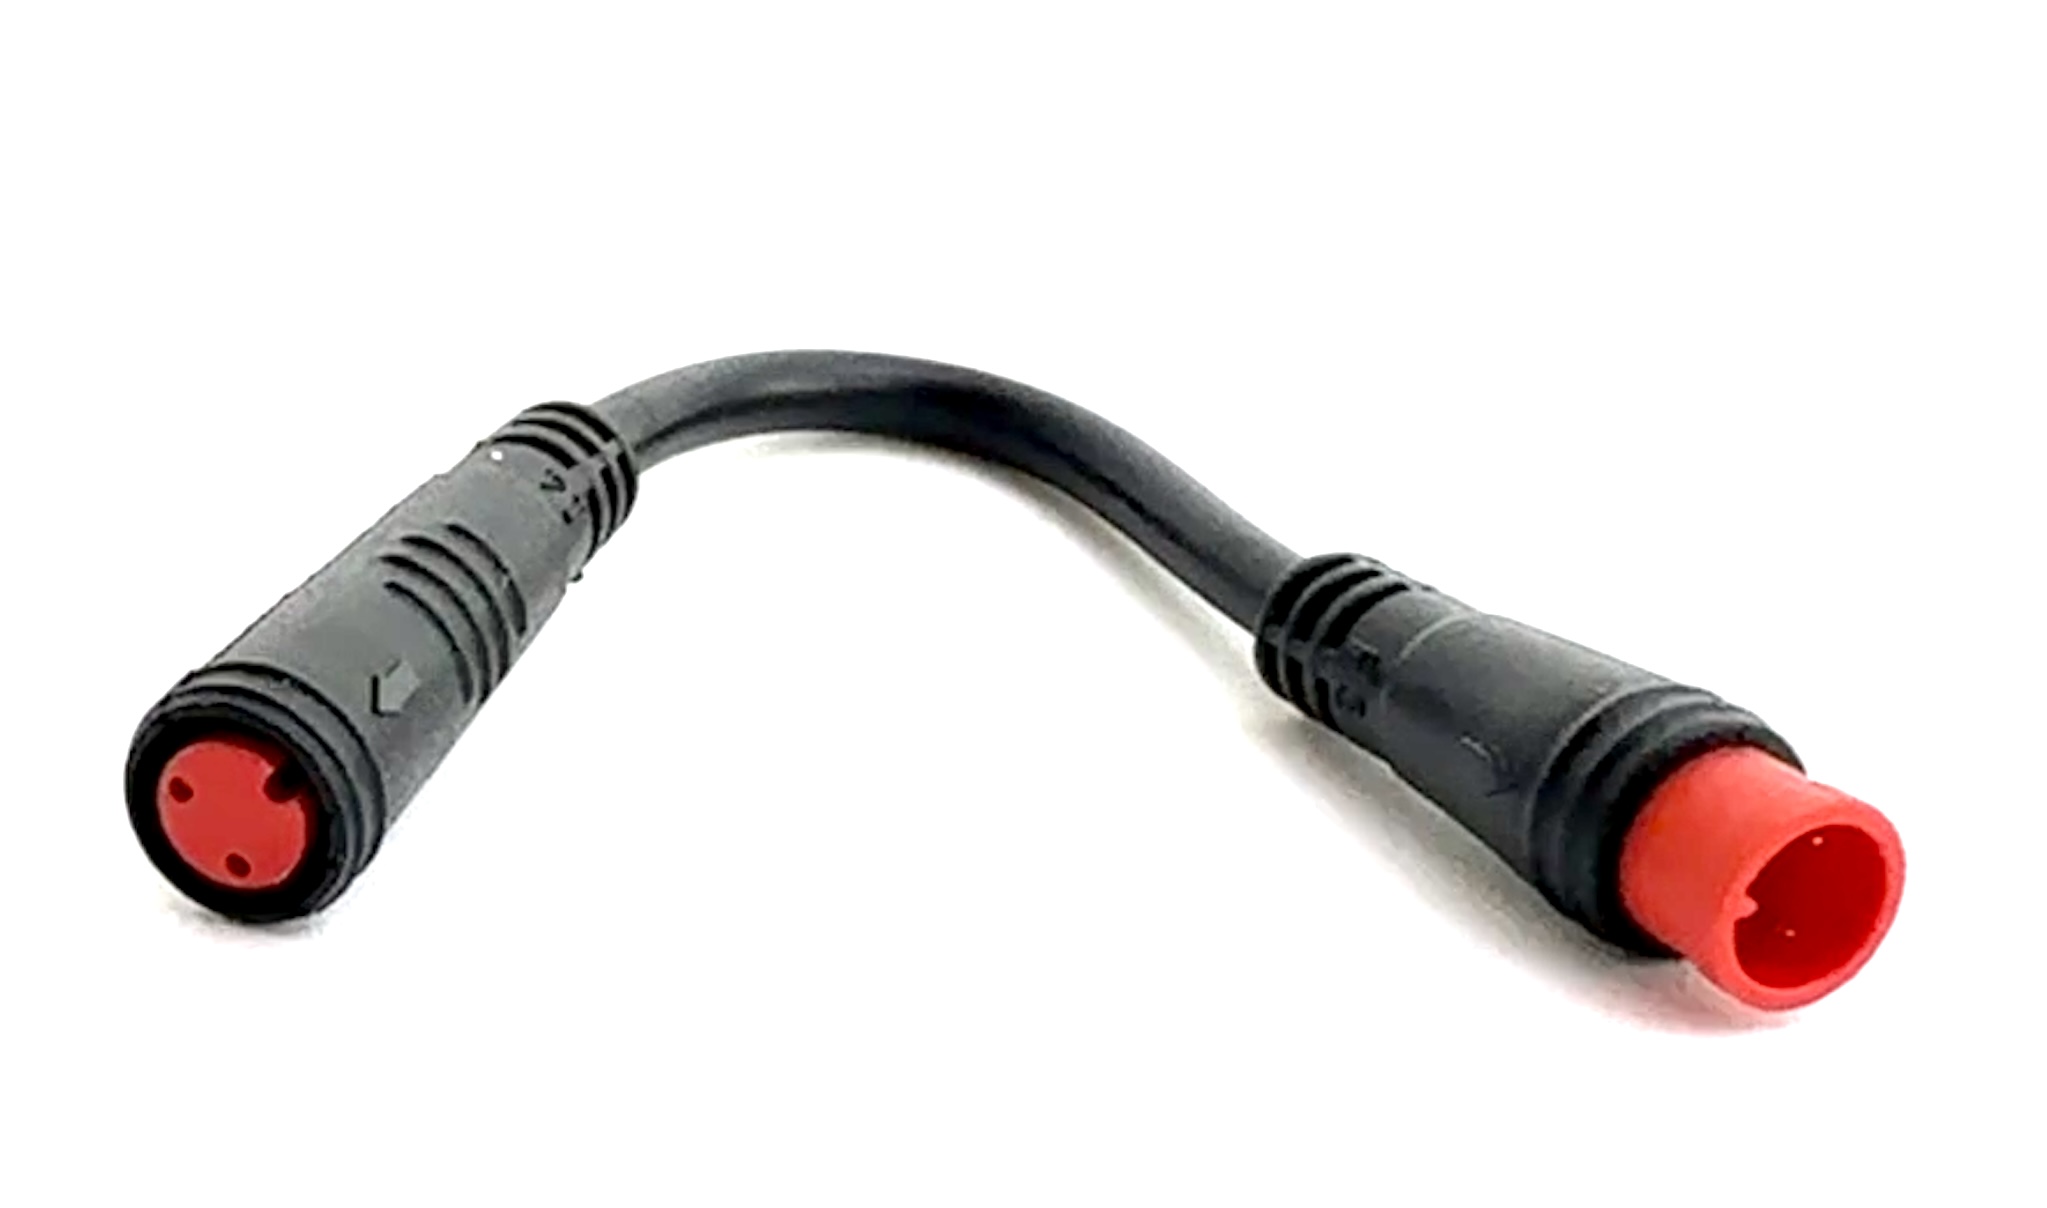 HIGO / Julet cable de extensión de 5,5 cm para ebike, 2 PIN hembra a macho, rojo